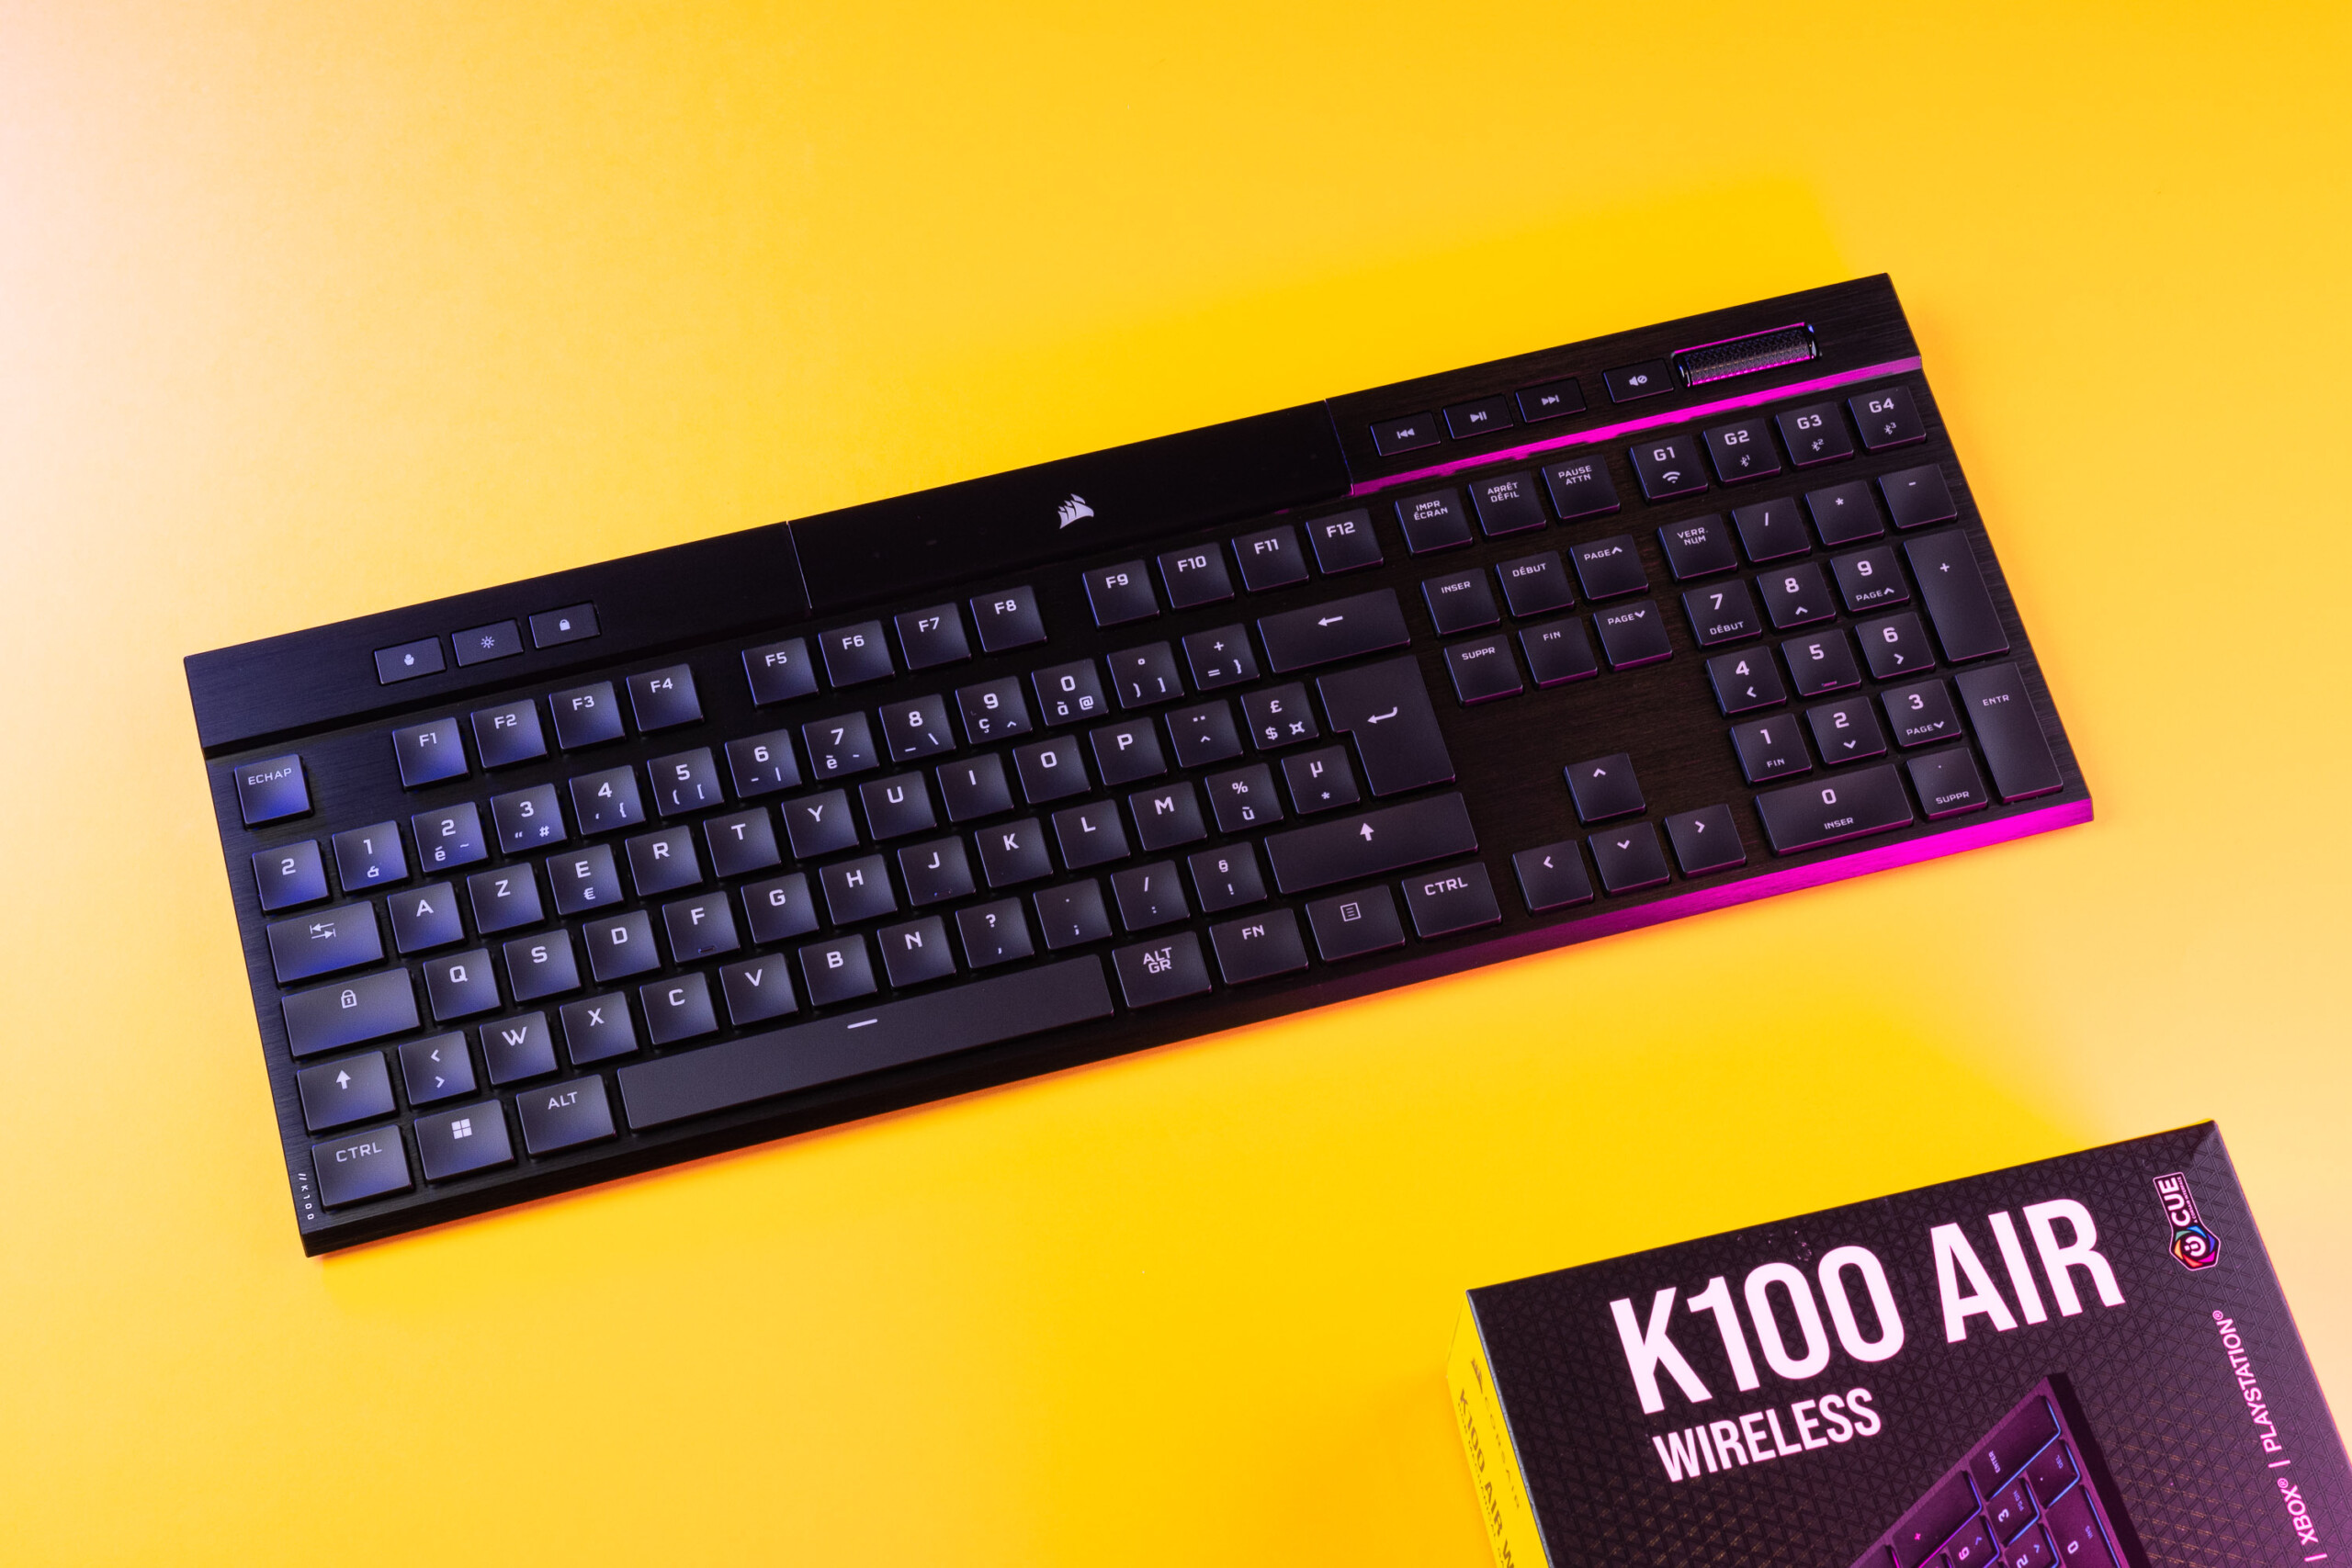 Promo : ce clavier gaming Corsair haut de gamme divise son prix par deux !  